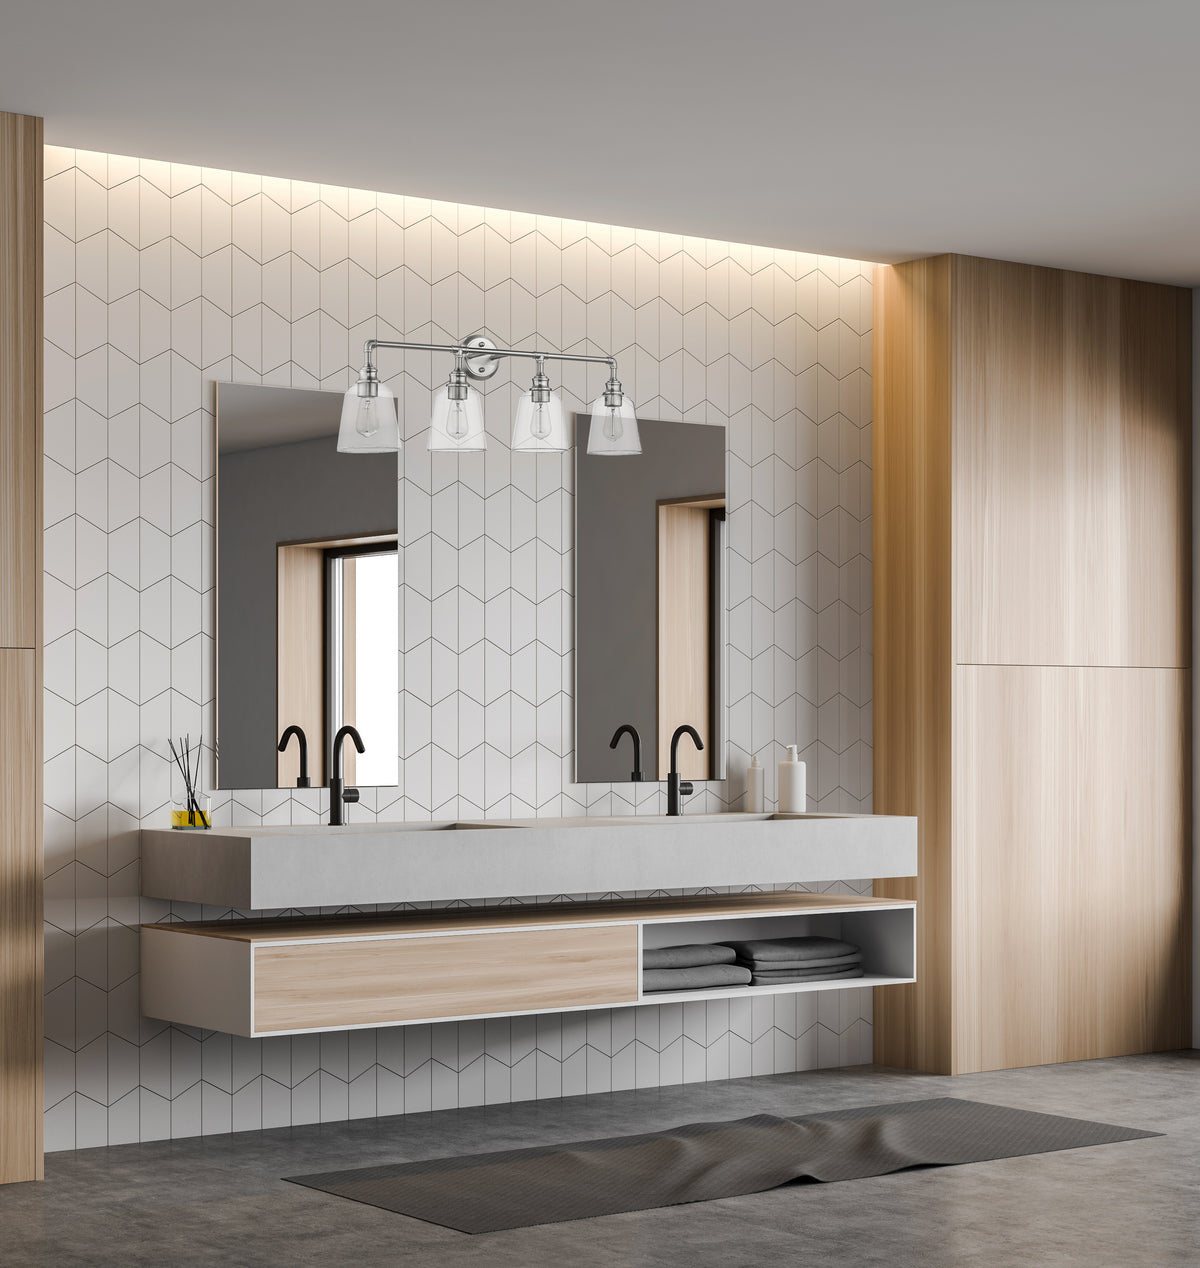 Nickel bathroom vanity light fixtures with 4 light - Vivio Lighting